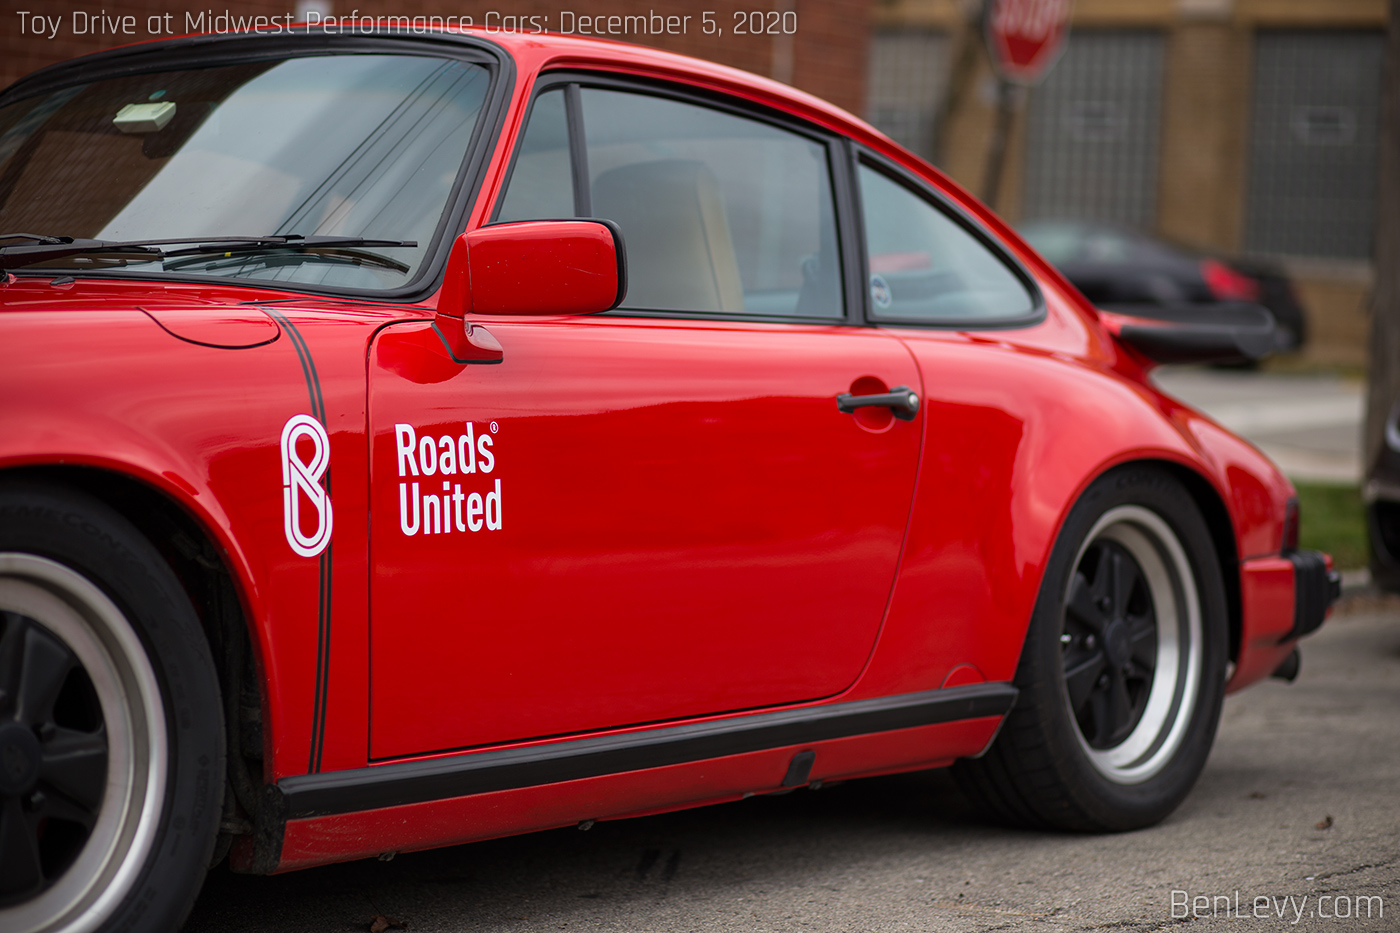 Roads United sticker on Porsche 911